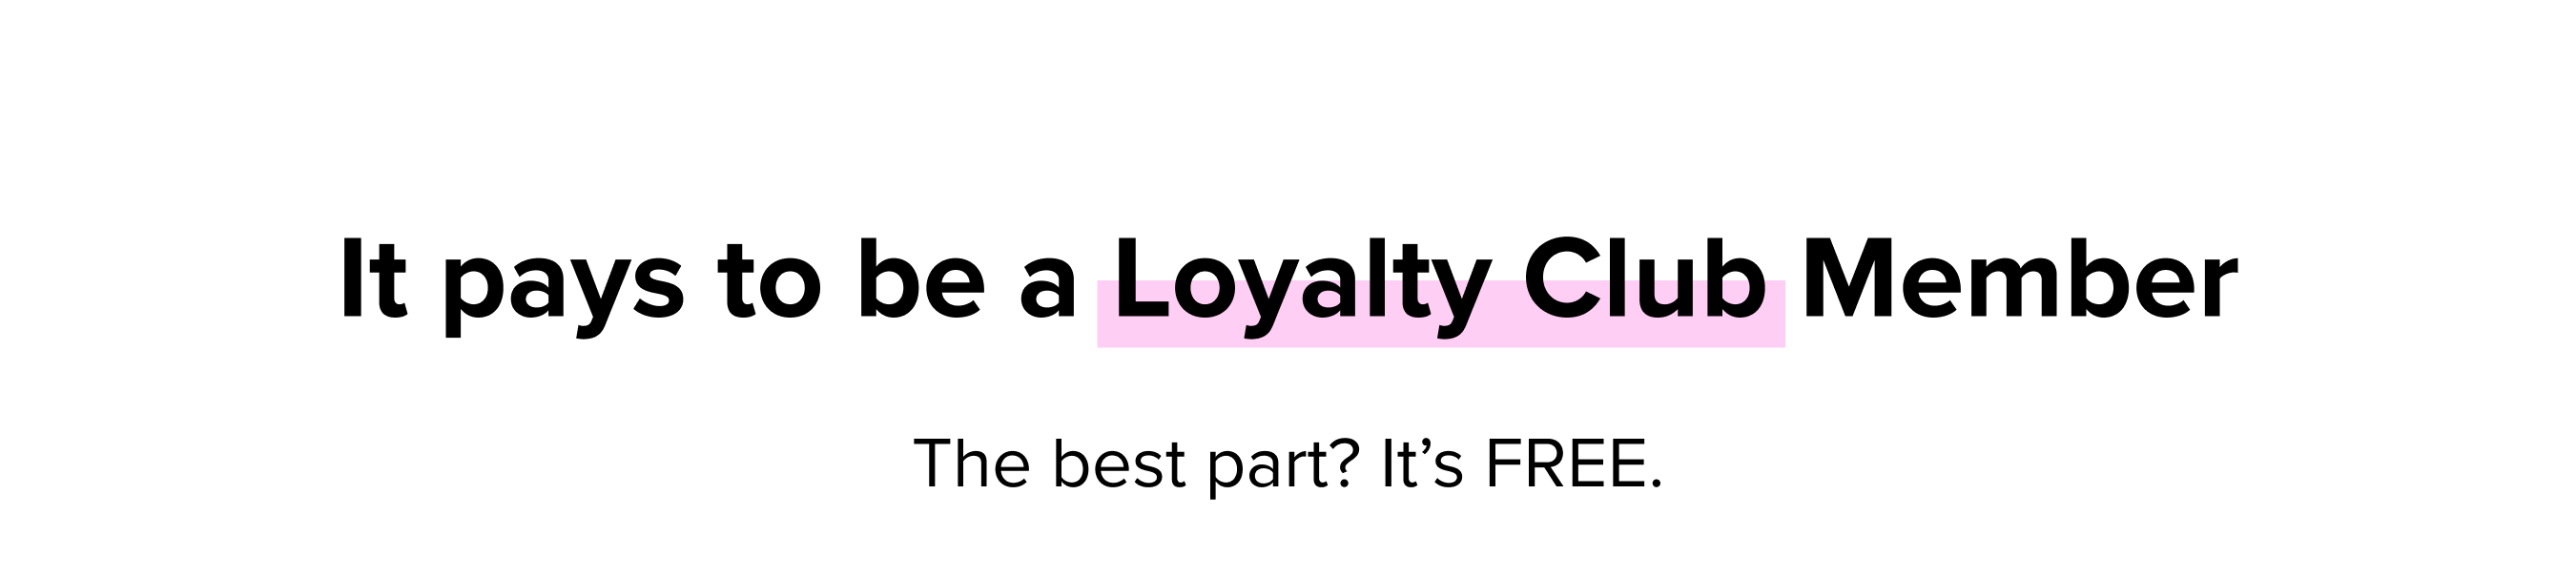 Fresh Loyalty Club